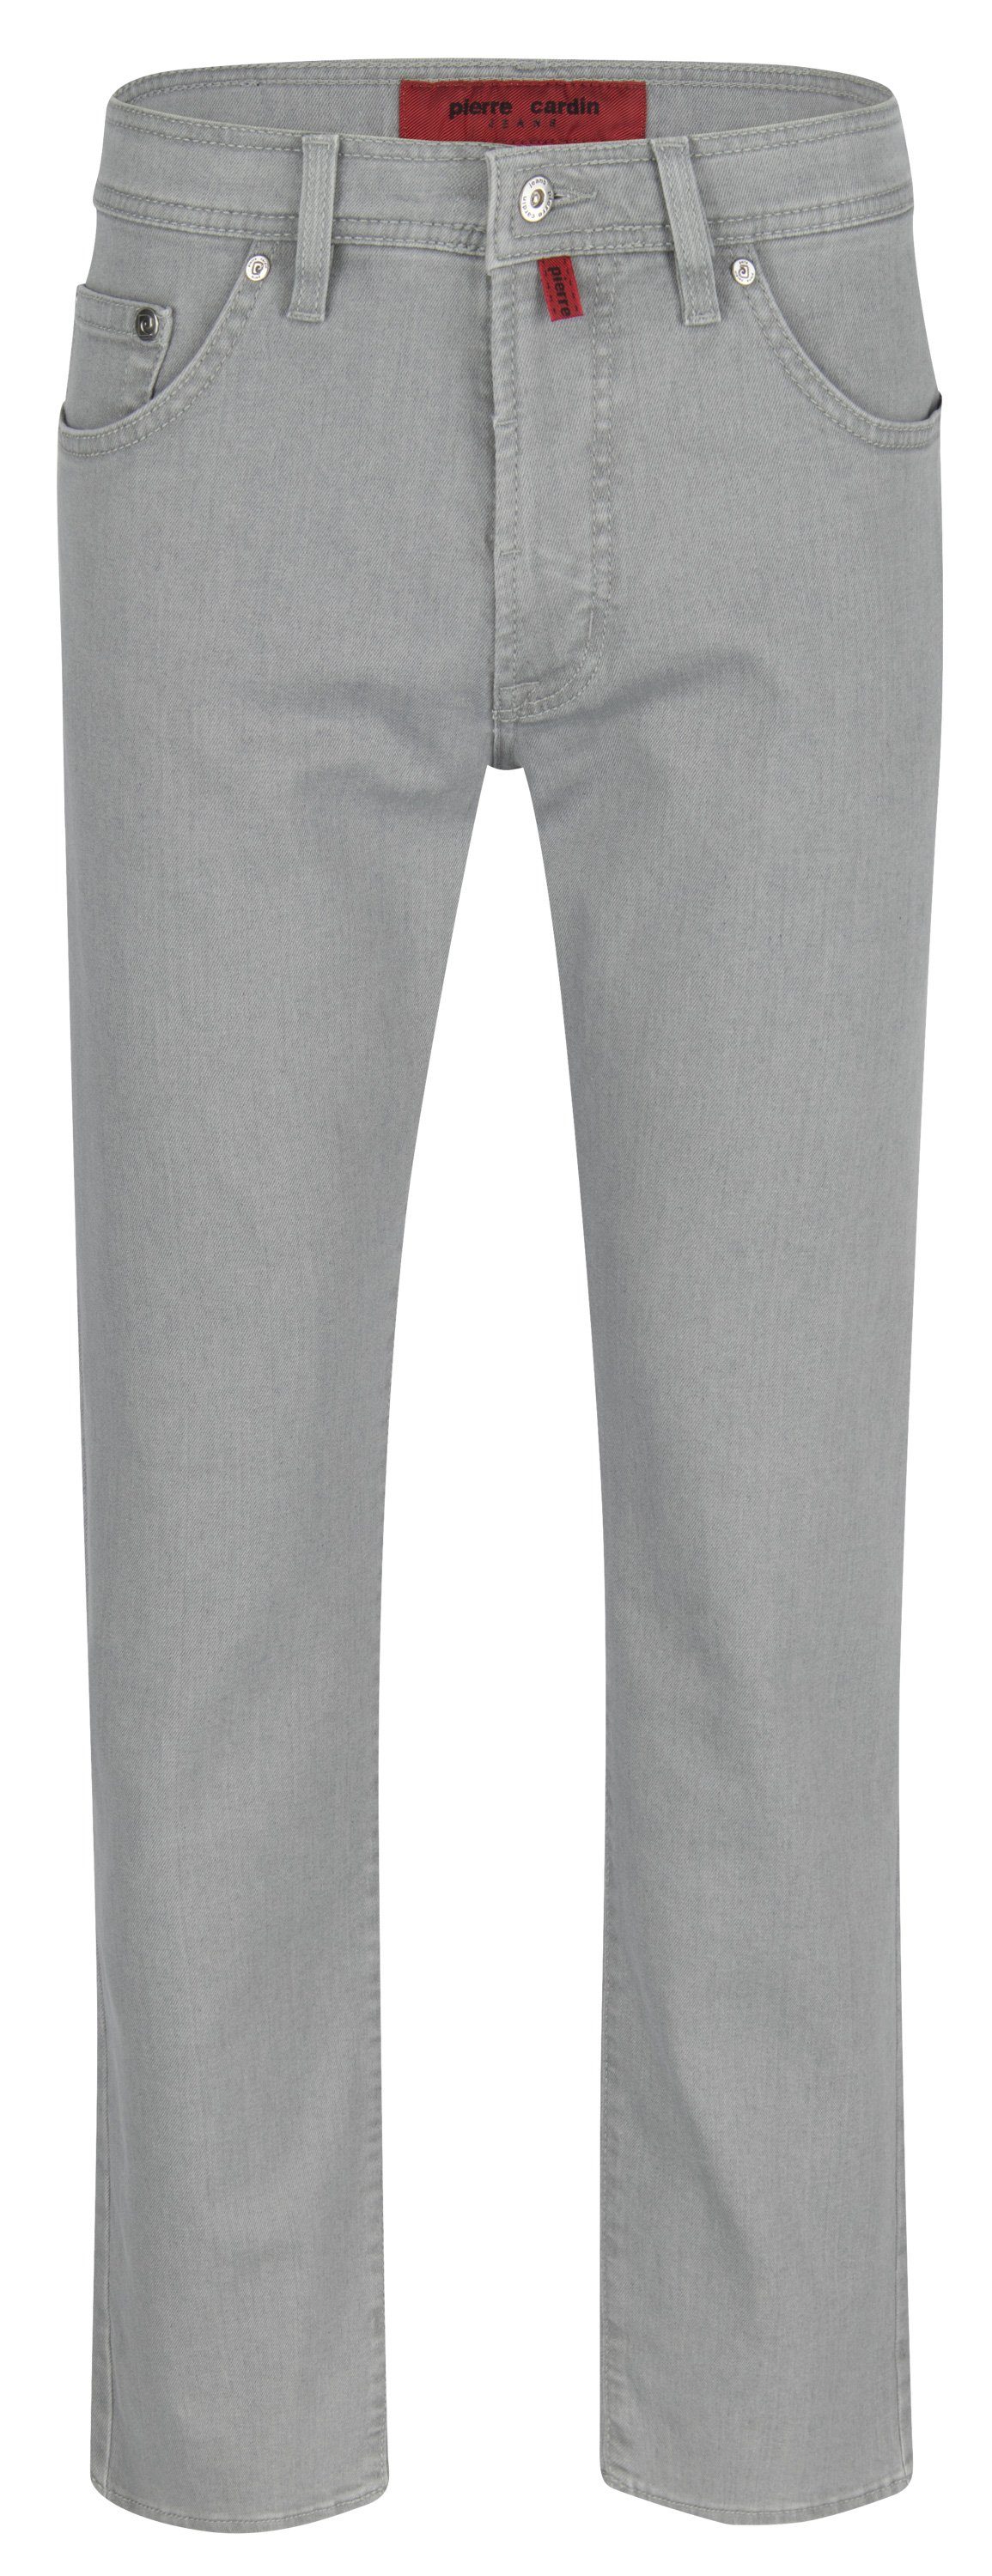 Pierre Cardin 5-Pocket-Jeans PIERRE 866.25 3196 grey light DEAUVILLE DENIM - EDITION CARDIN